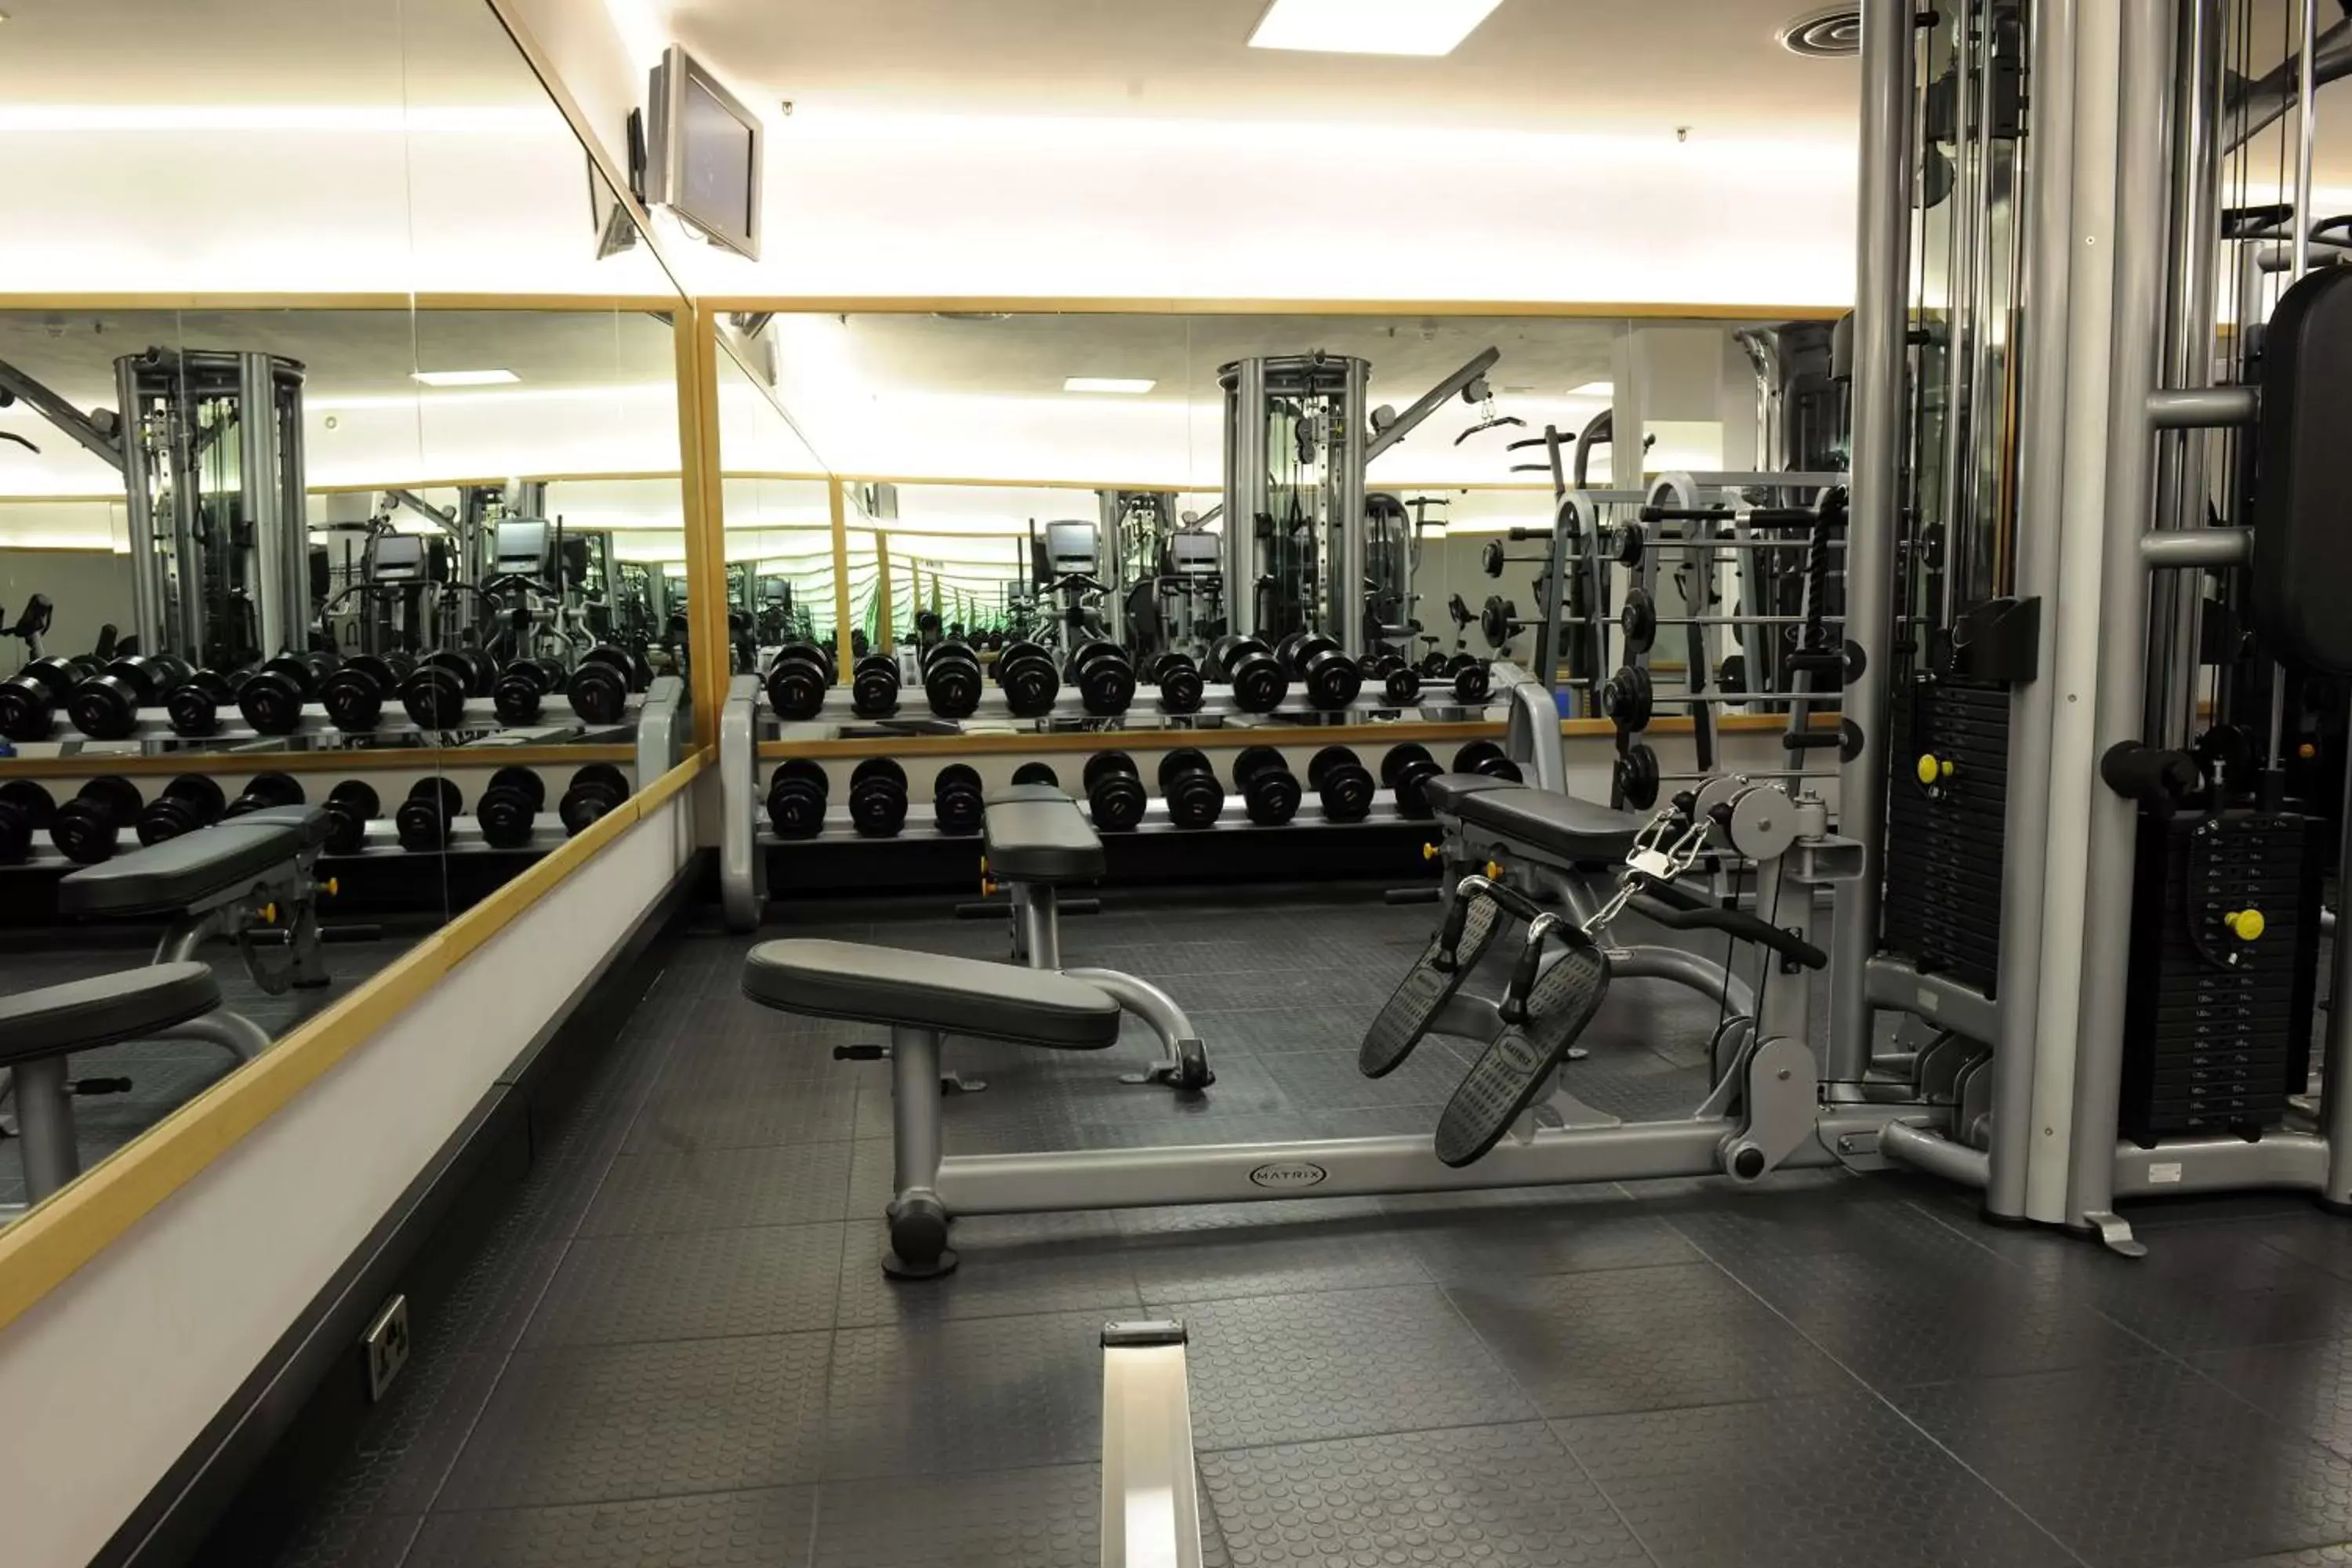 Fitness centre/facilities, Fitness Center/Facilities in Hyatt Regency Birmingham